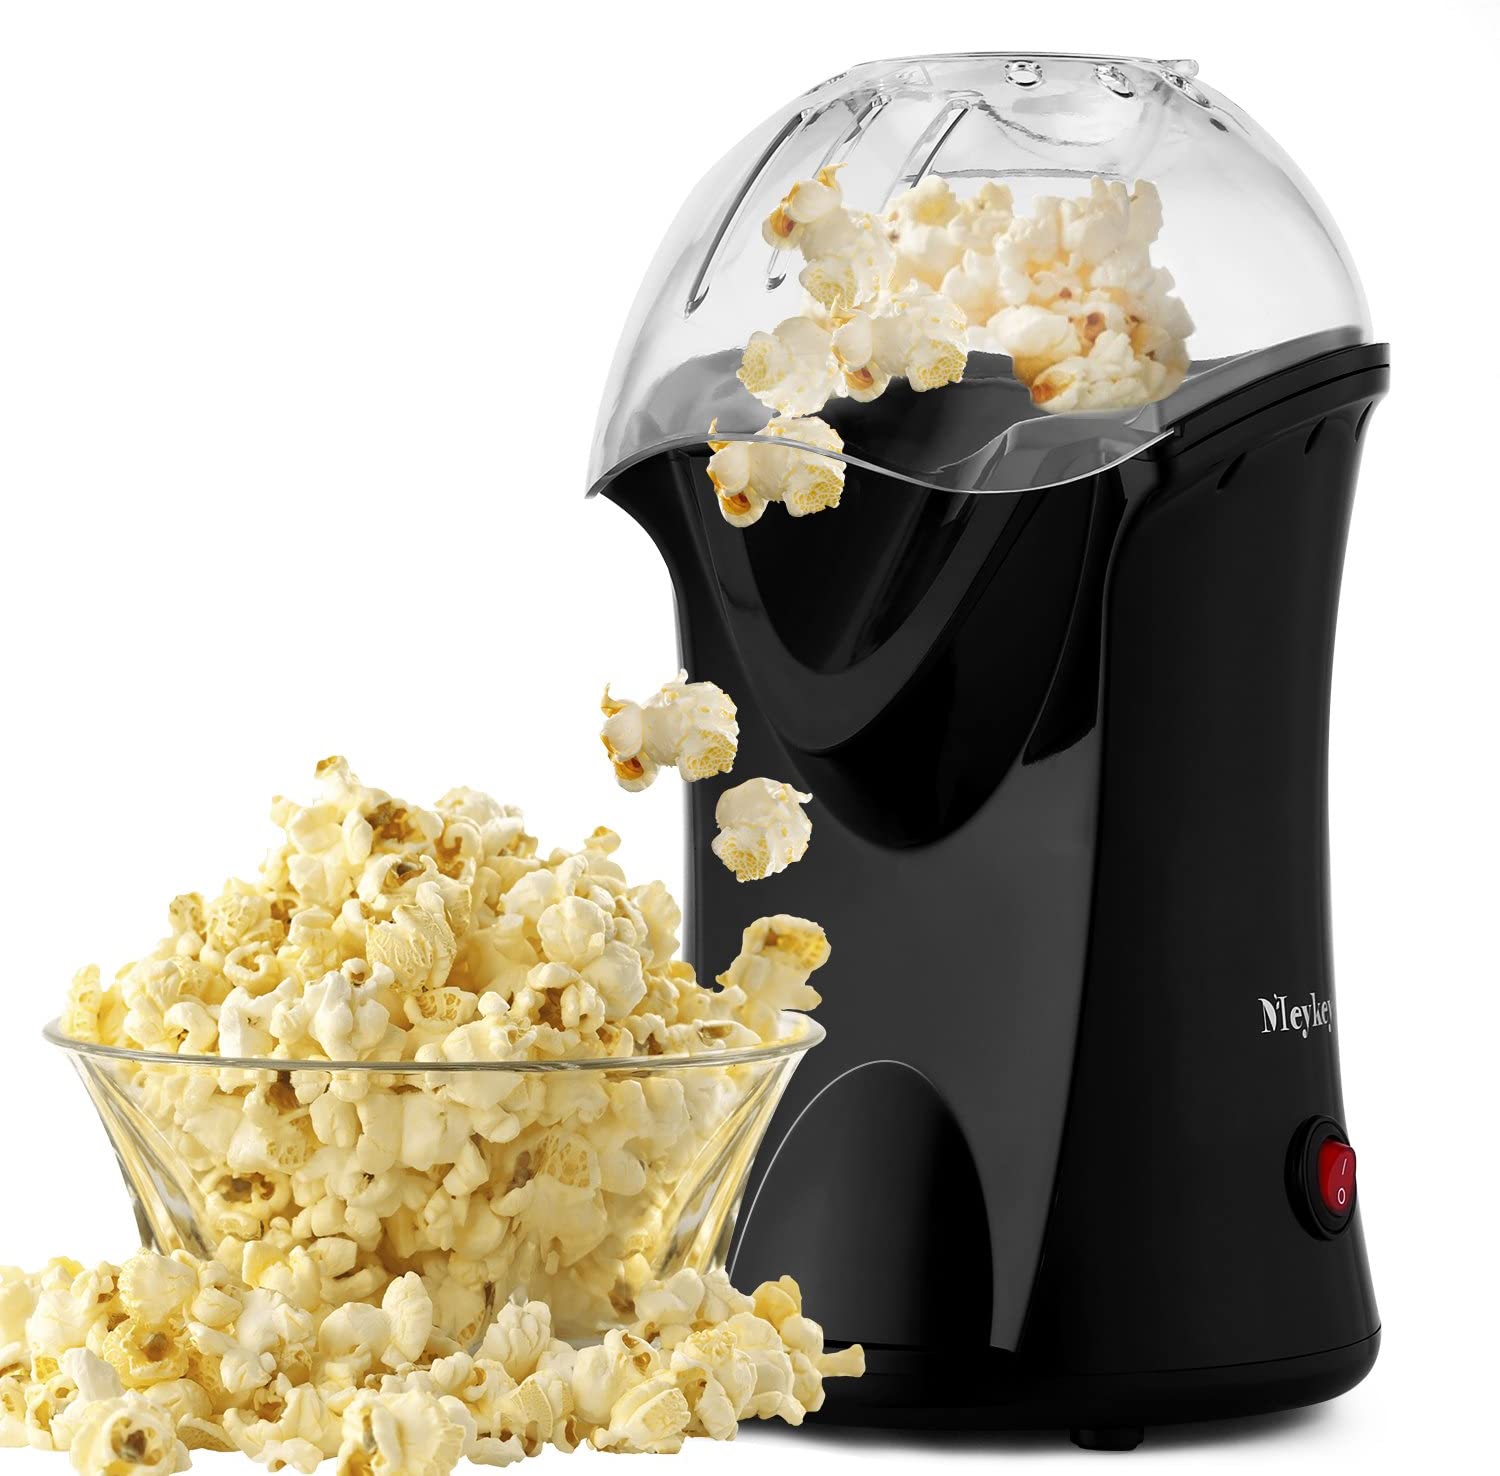 Profi Popcornmaschine Popcornmaker Popcorngerät 1200W Popcorn Maschine Heißluft 